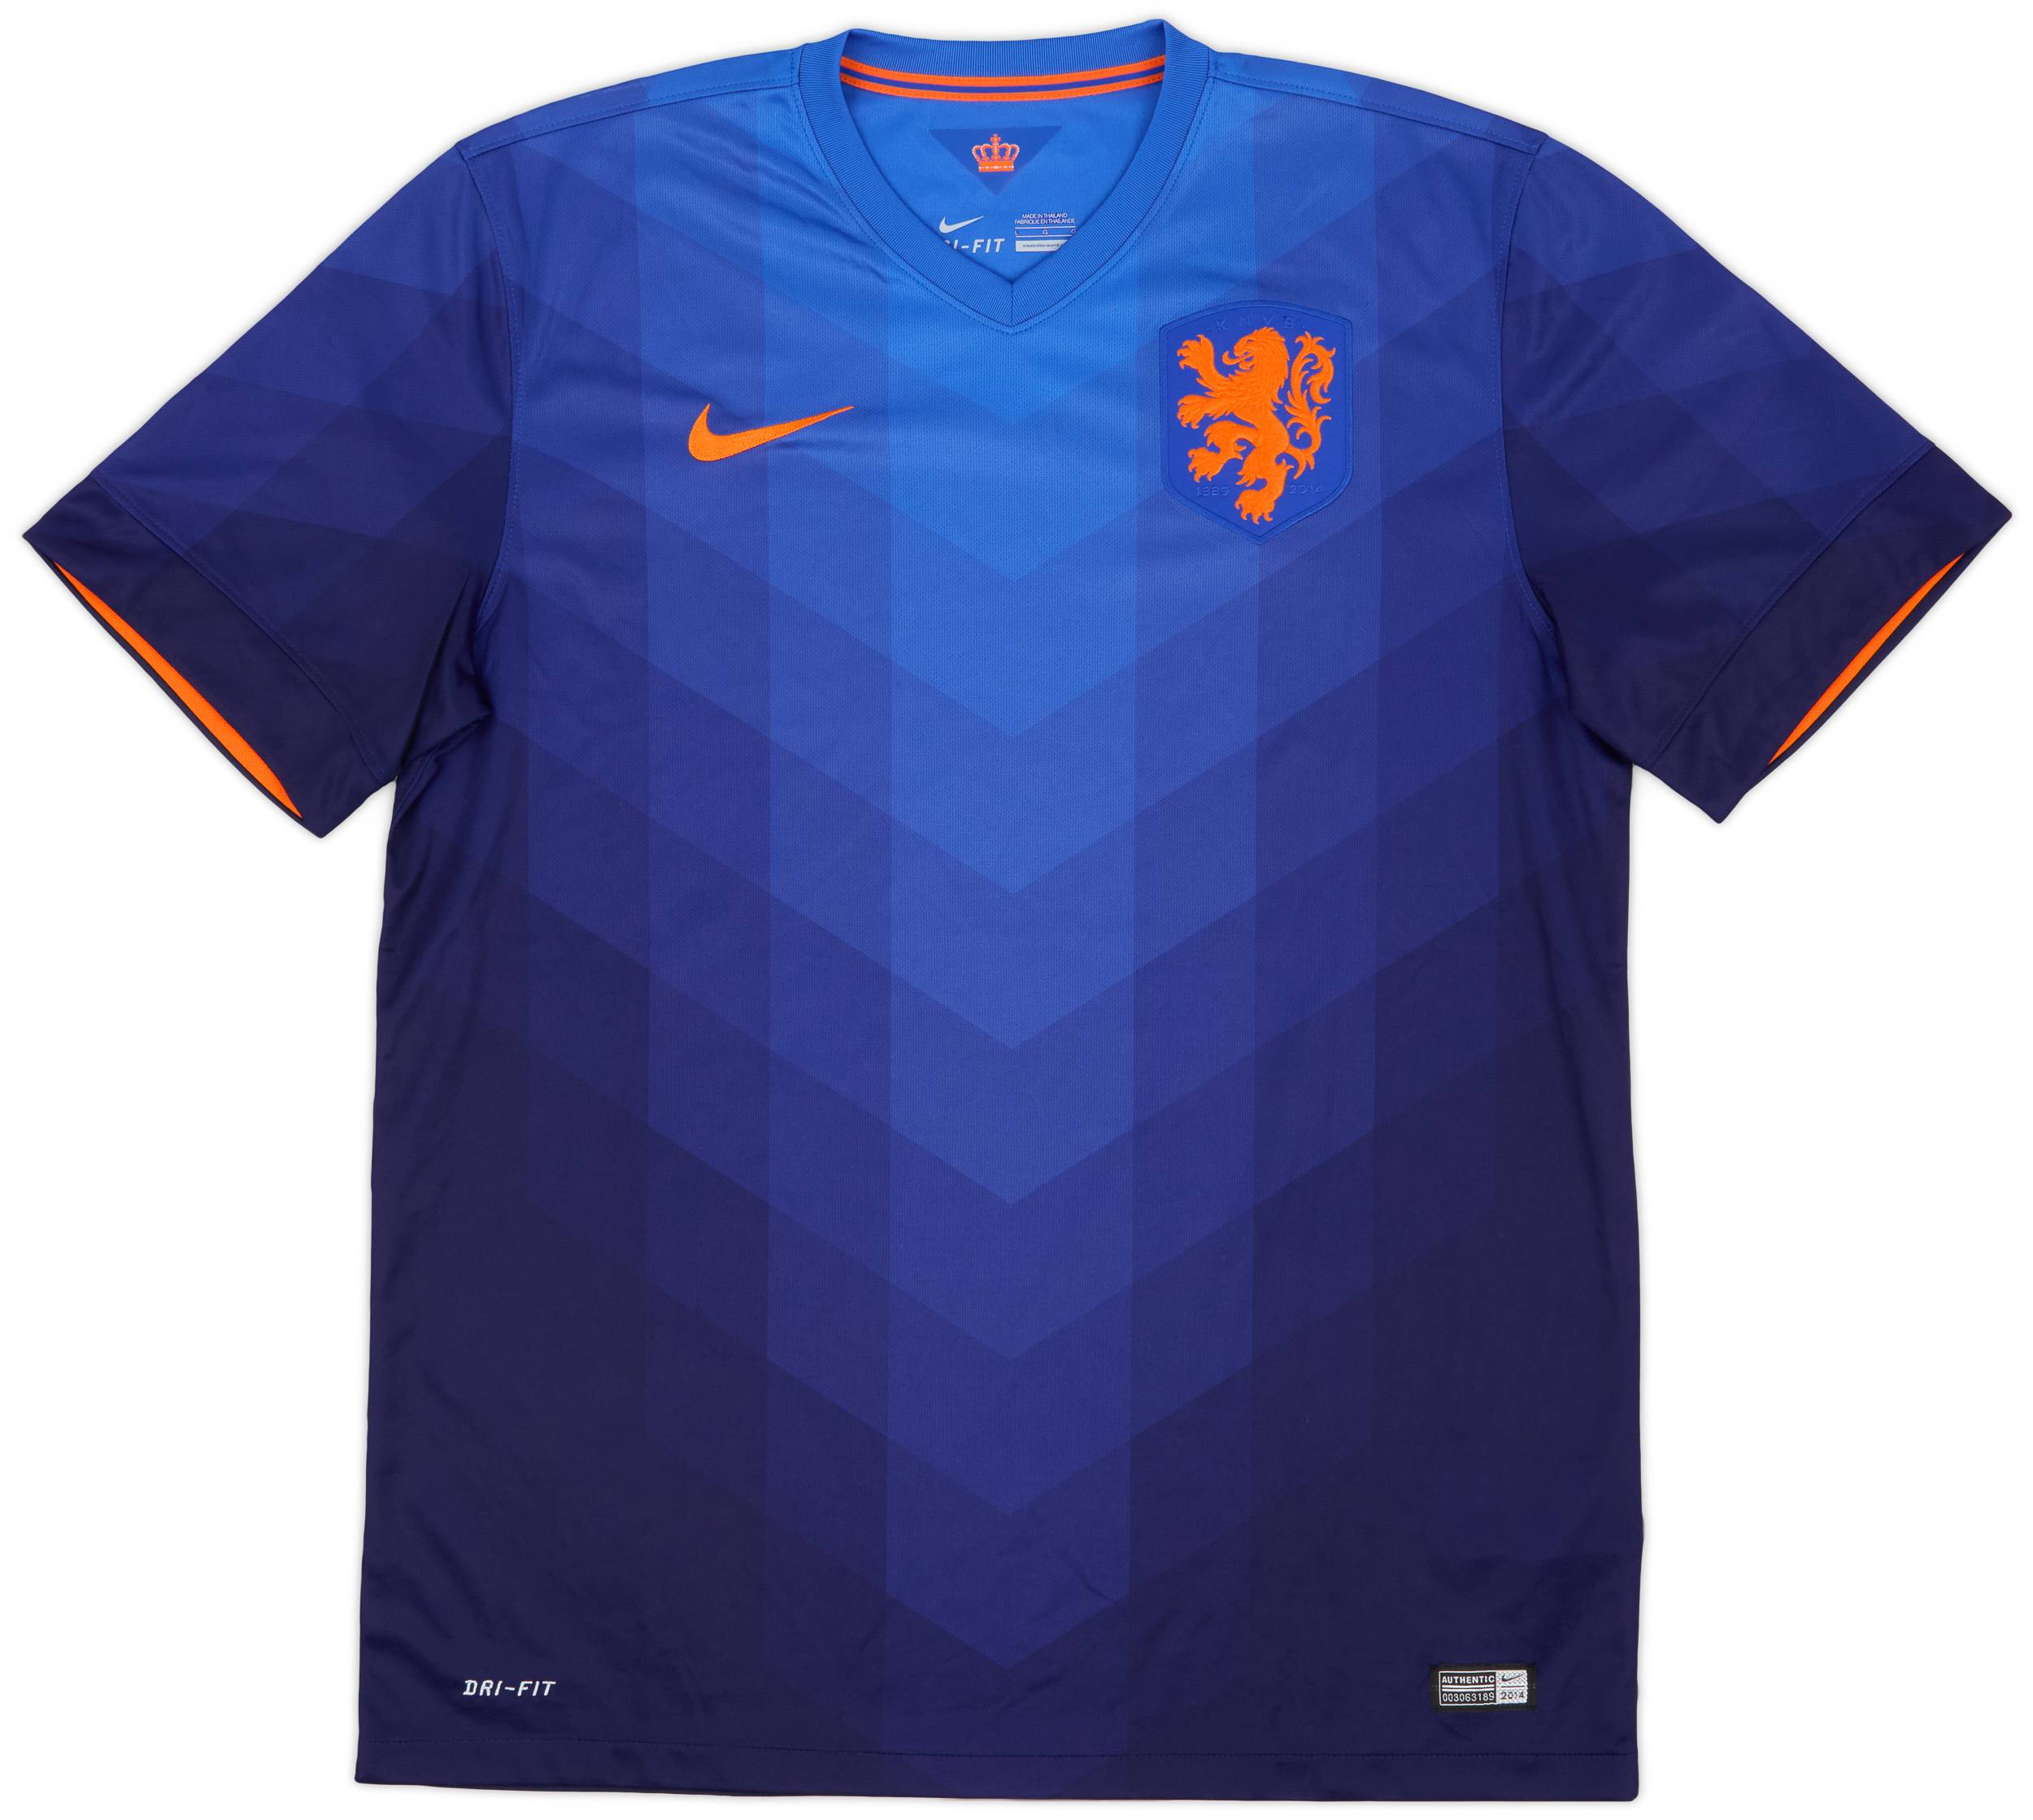 2014-15 Netherlands Away Shirt - 9/10 - (L)